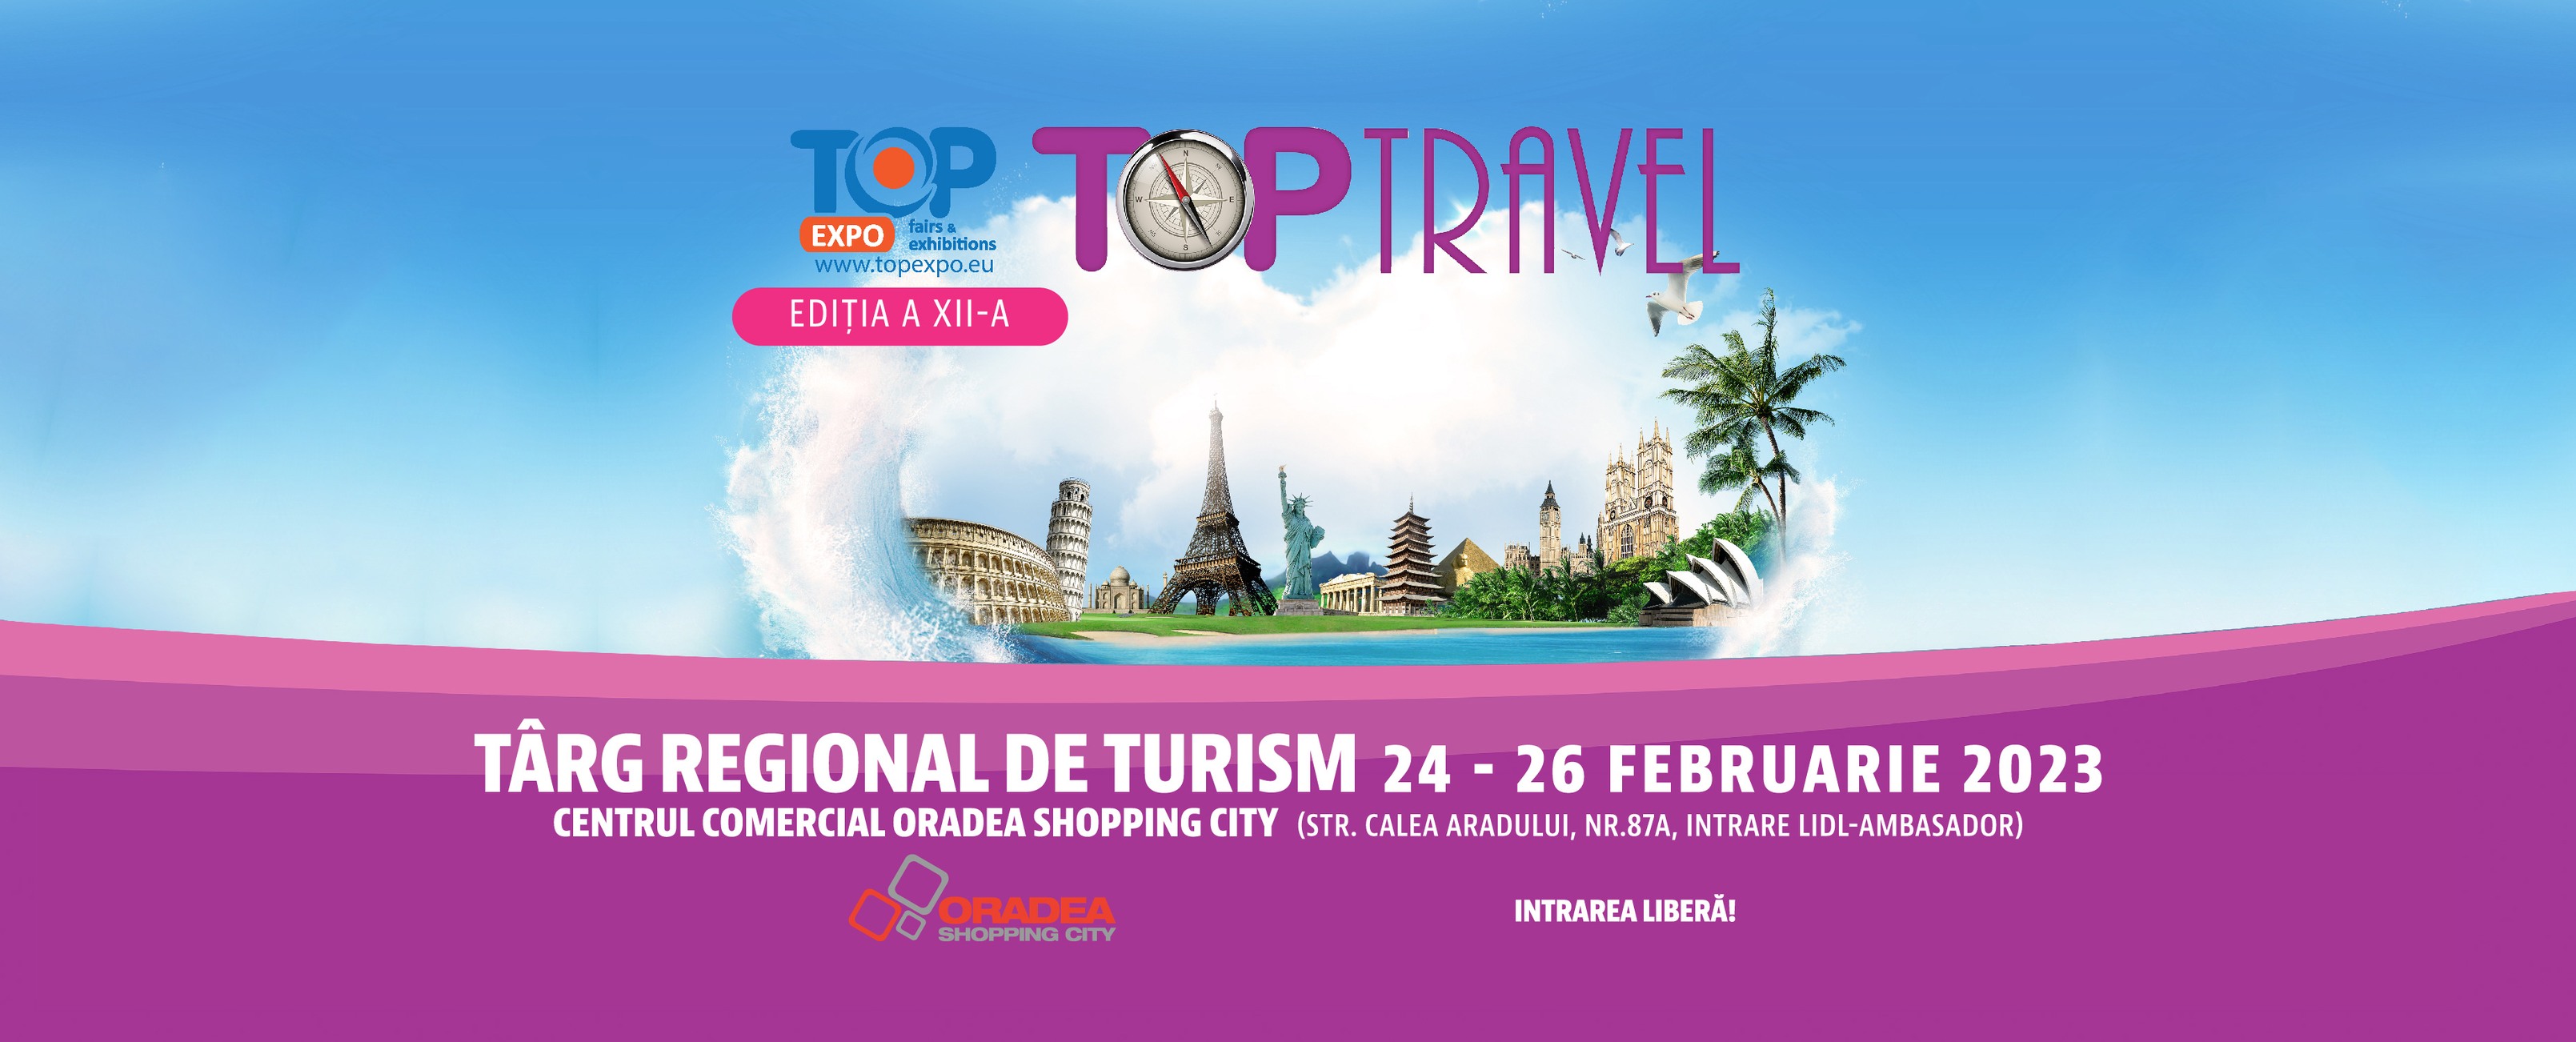 Top Travel Targul de Turism de la Oradea 24-26 februarie 2023